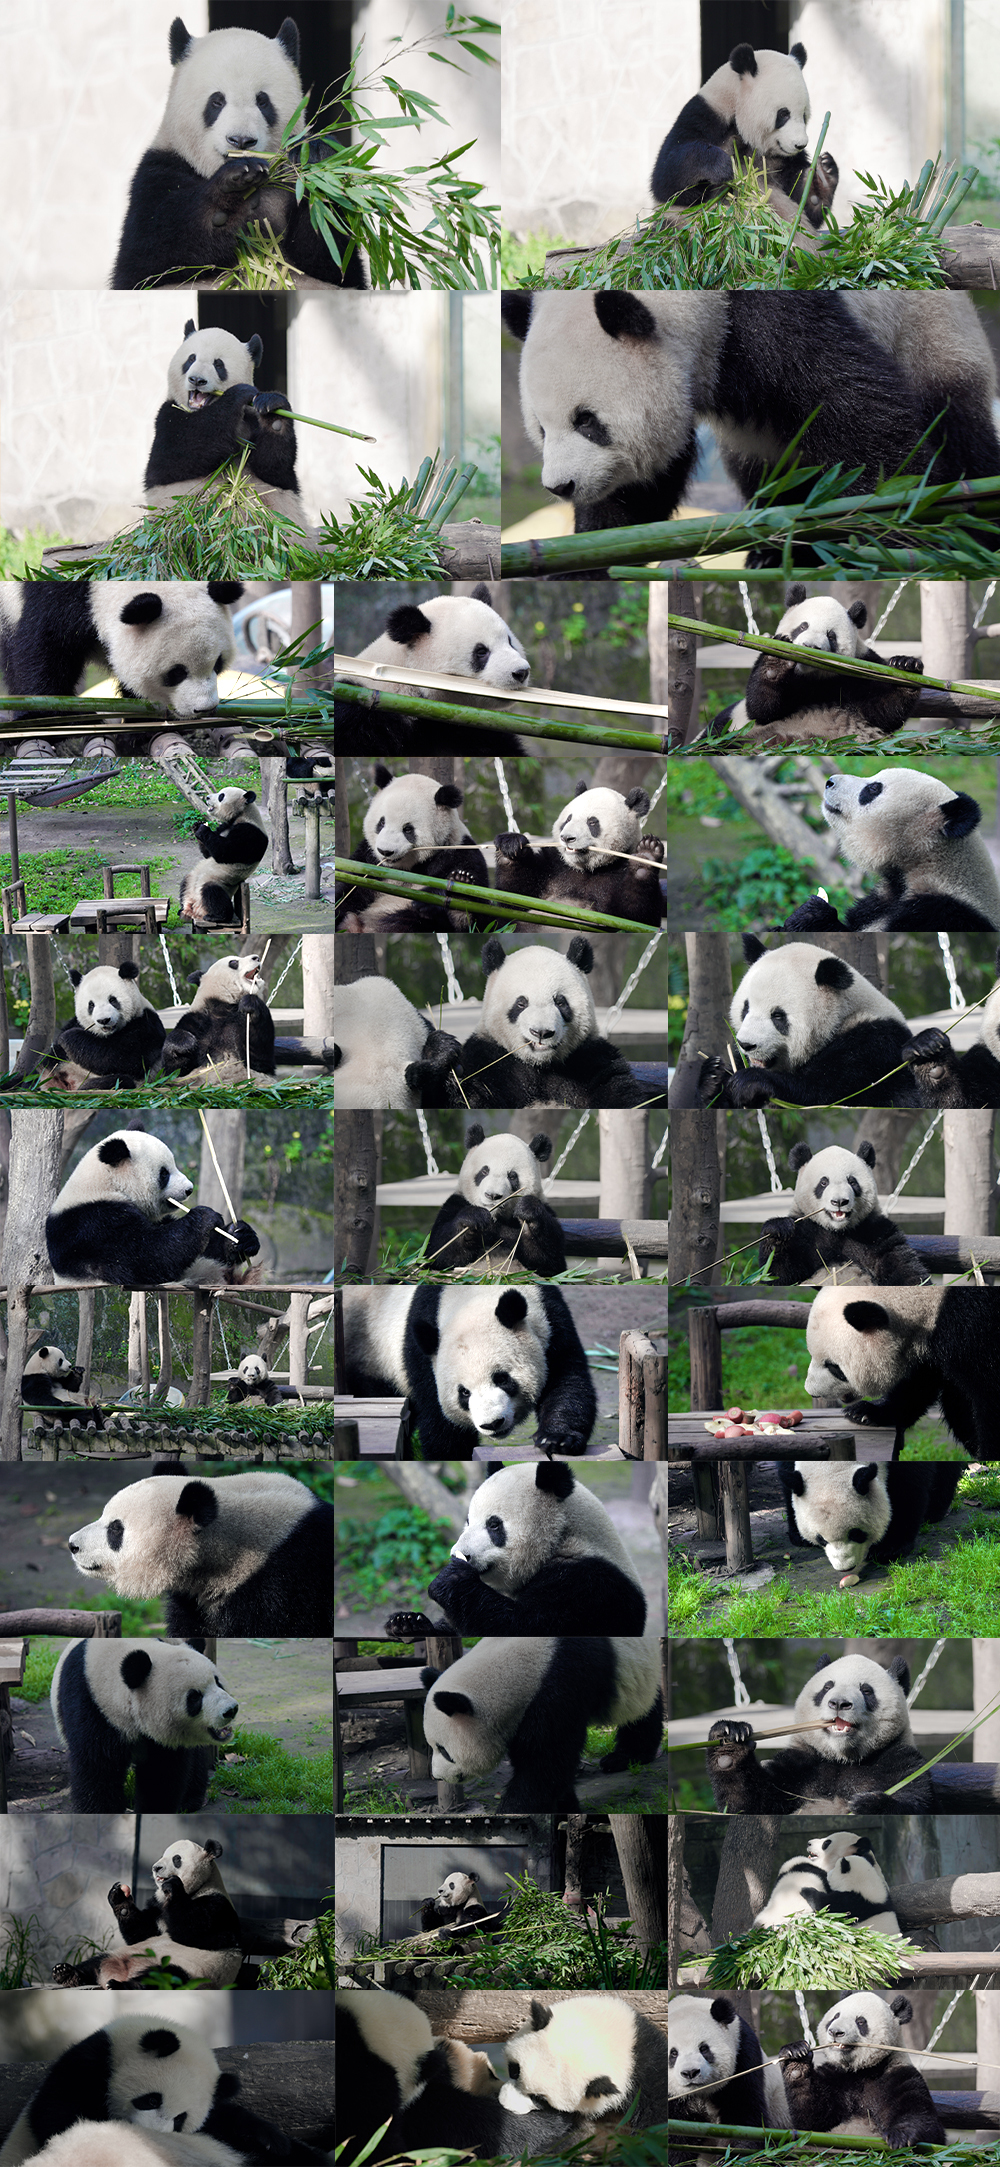 大熊猫 熊猫吃竹子